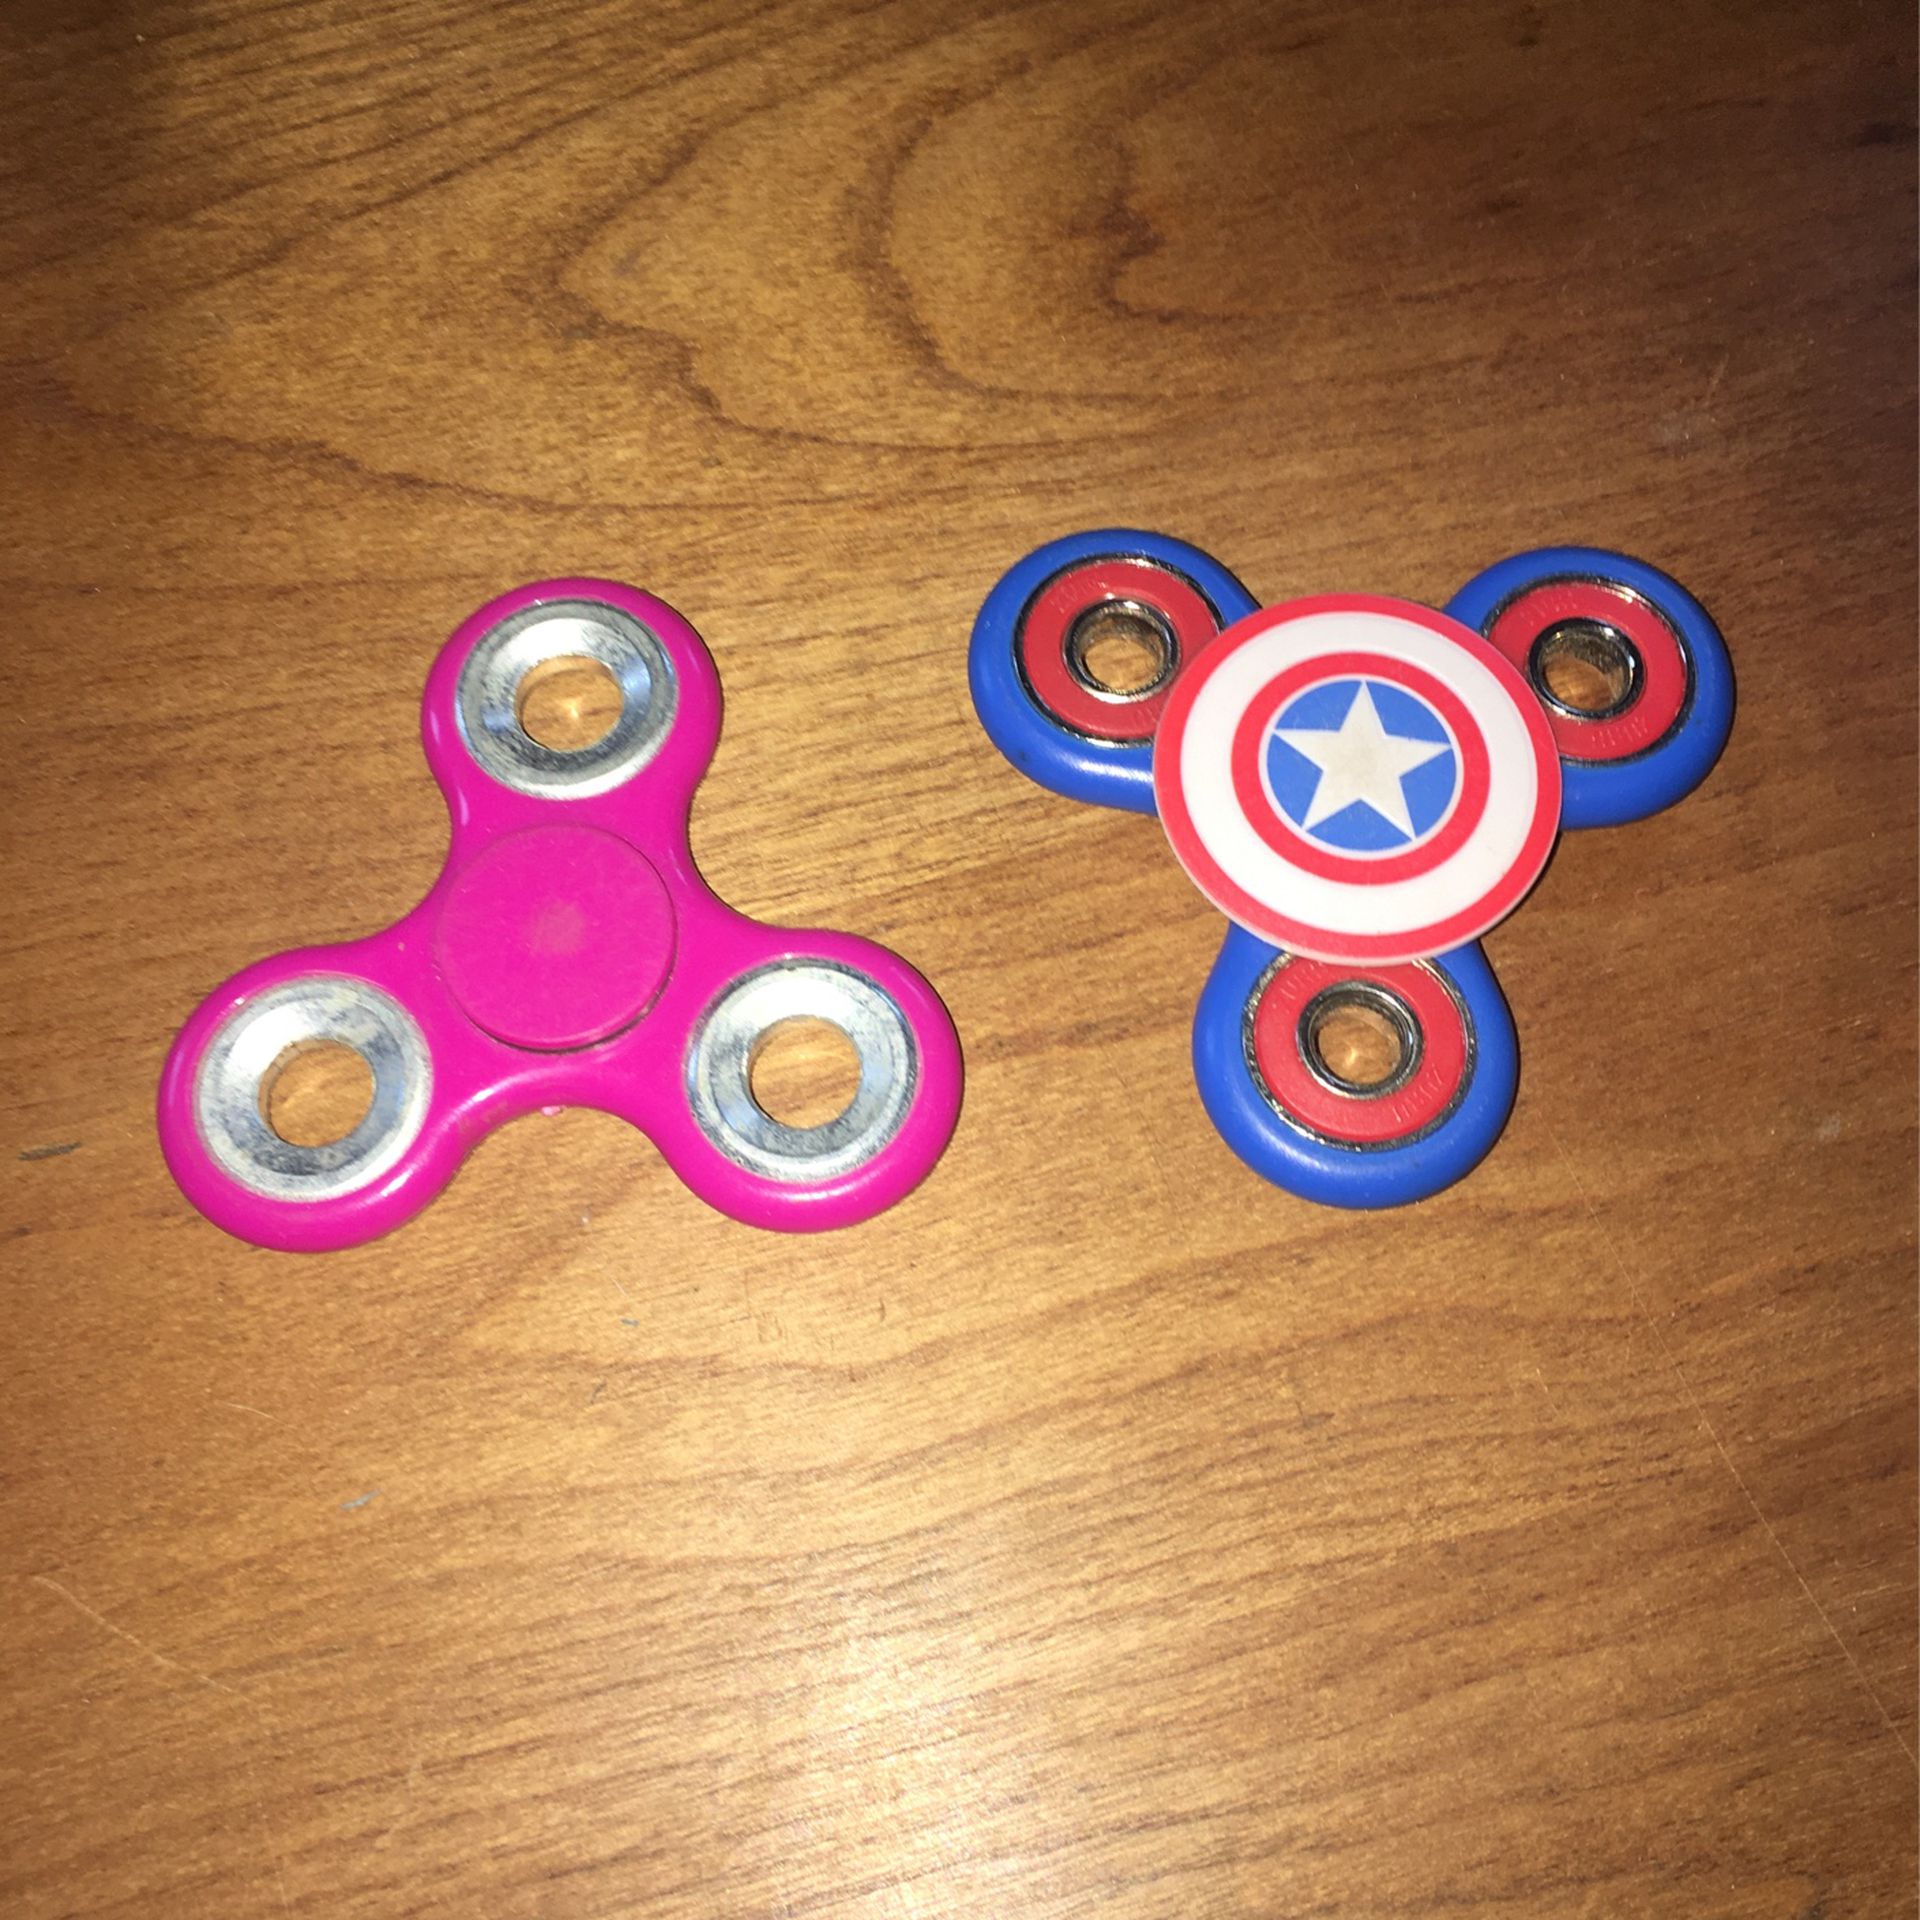 lCustom “Marvel” Captain America fidget spinner and 1 pink fidget spinner